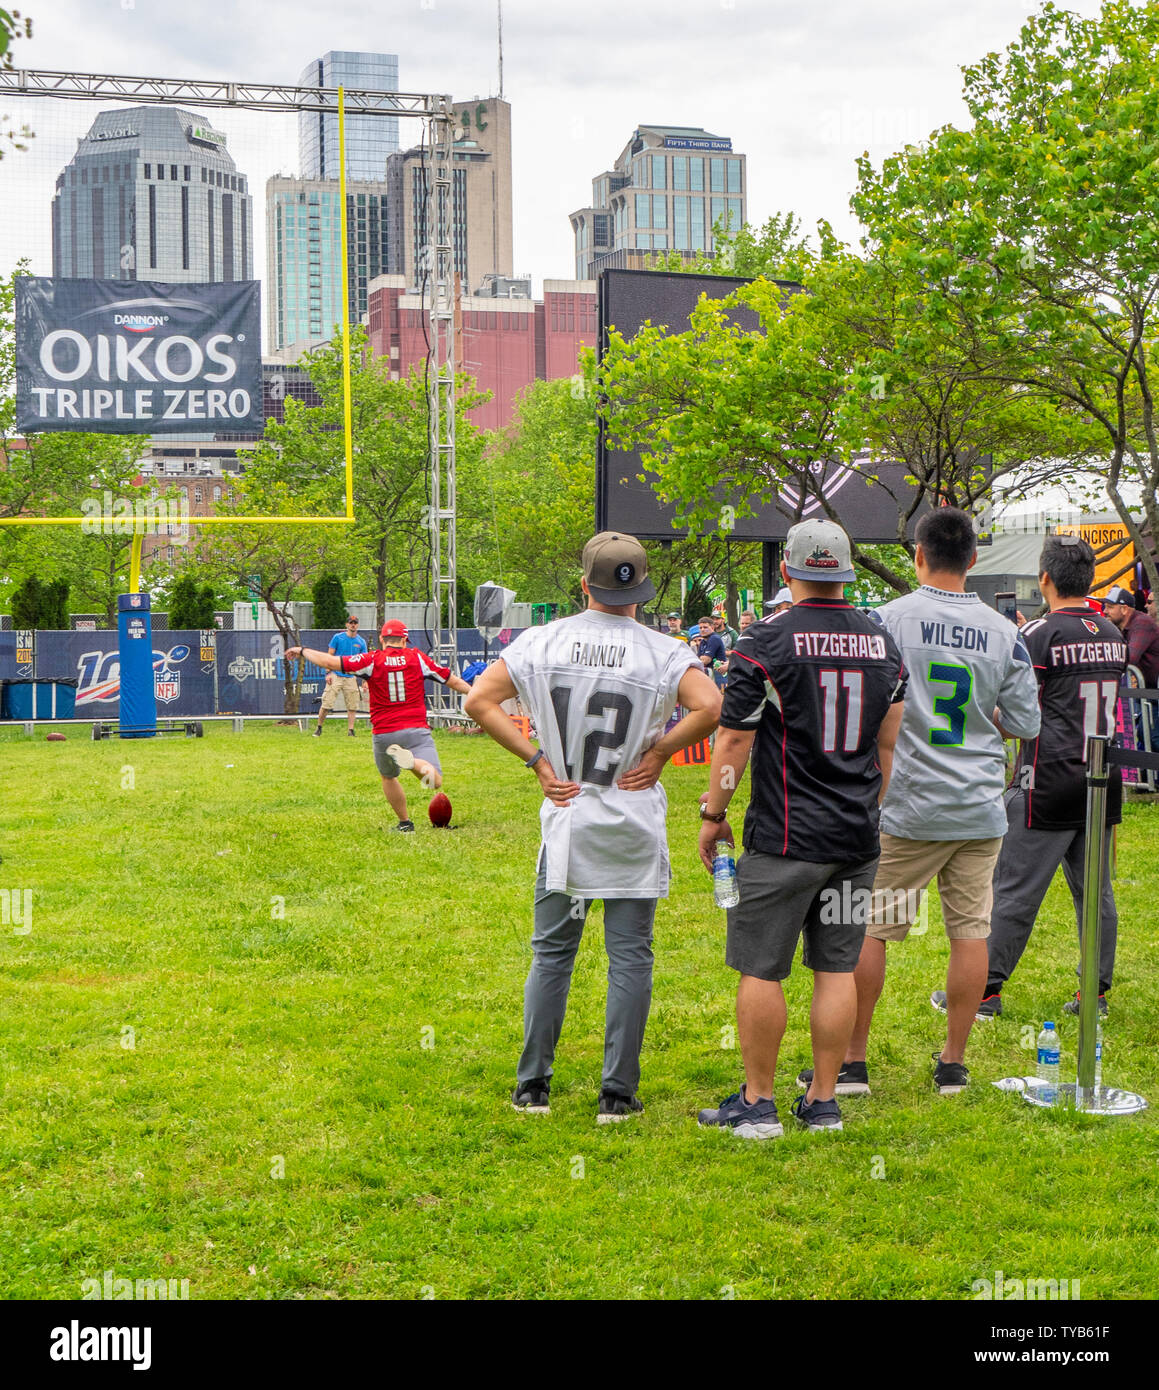 Los fans de la NFL masculino en una meta pateando la competición en el NFL Draft 2019 Nissan Stadium, de Nashville, Tennessee, EE.UU.. Foto de stock